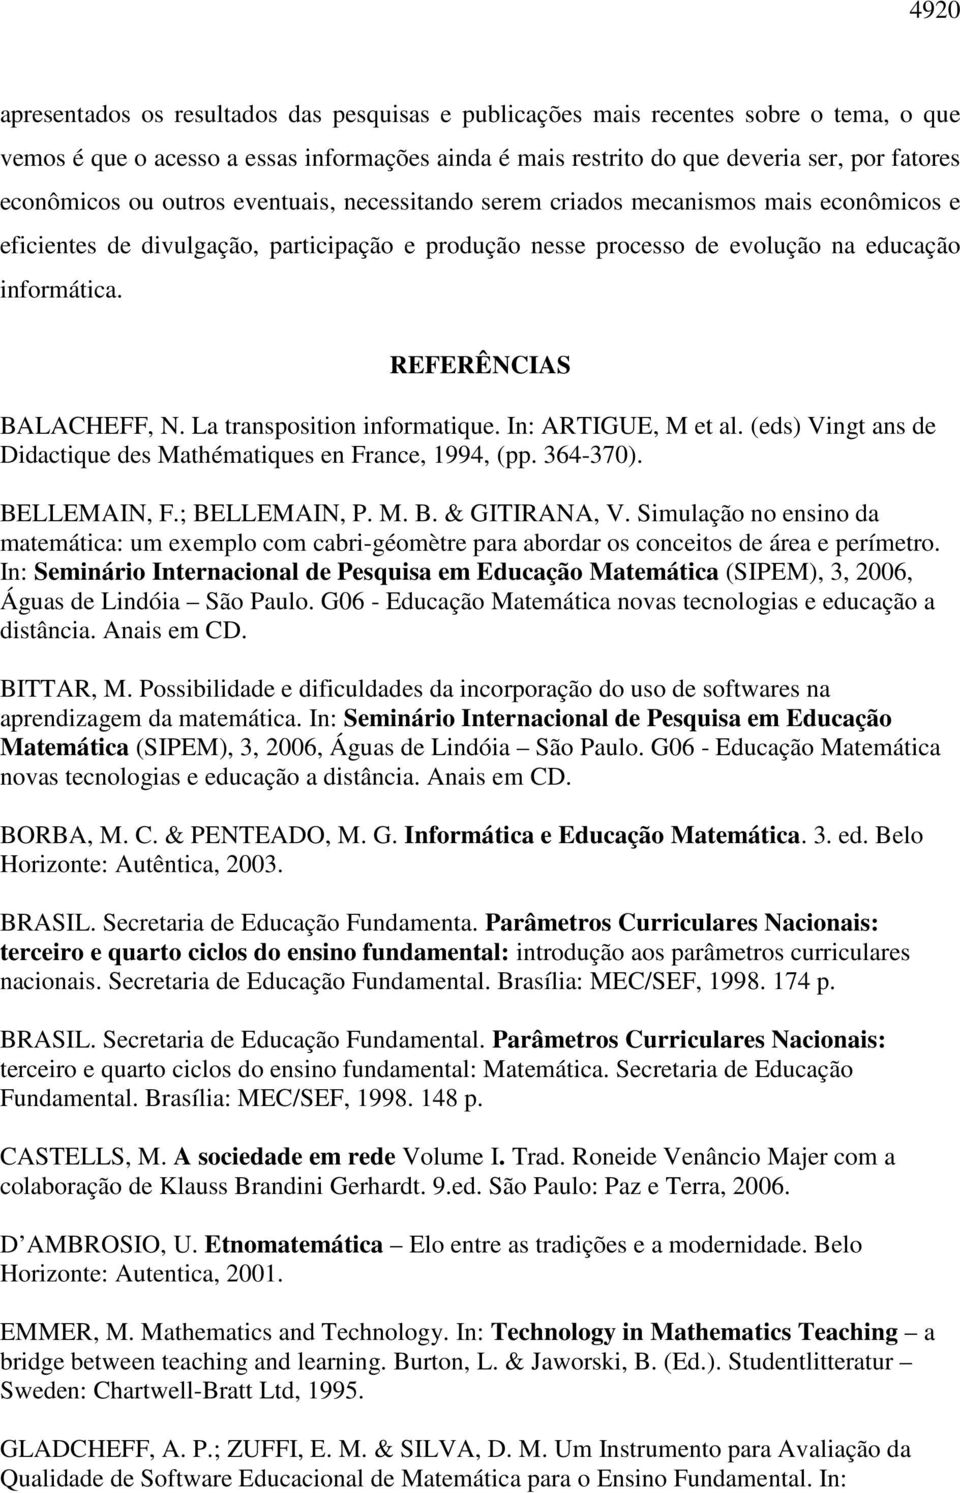 REFERÊNCIAS BALACHEFF, N. La transposition informatique. In: ARTIGUE, M et al. (eds) Vingt ans de Didactique des Mathématiques en France, 1994, (pp. 364-370). BELLEMAIN, F.; BELLEMAIN, P. M. B. & GITIRANA, V.